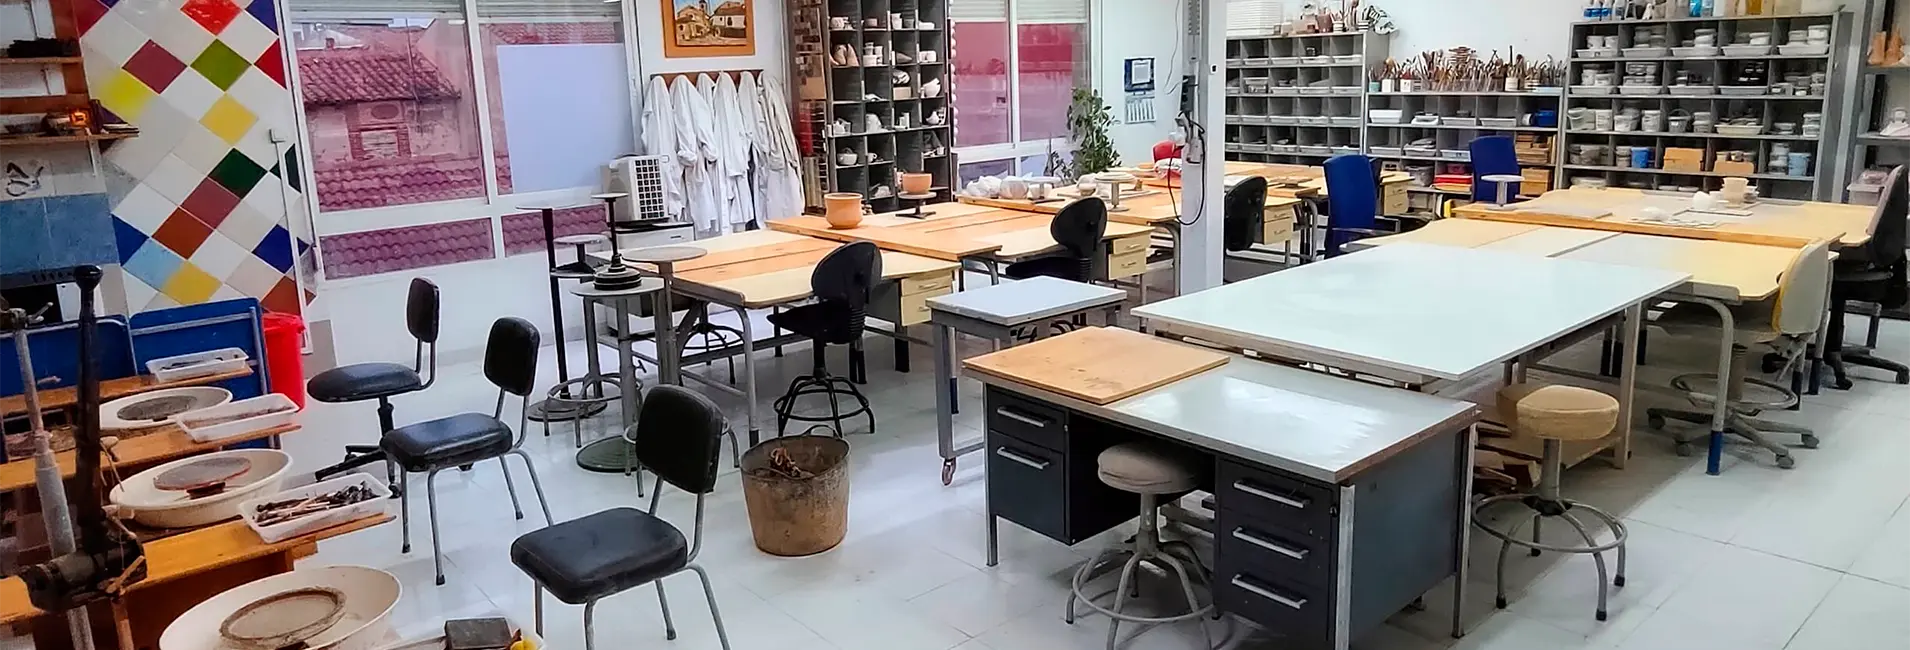 Escuela de Cerámica en León